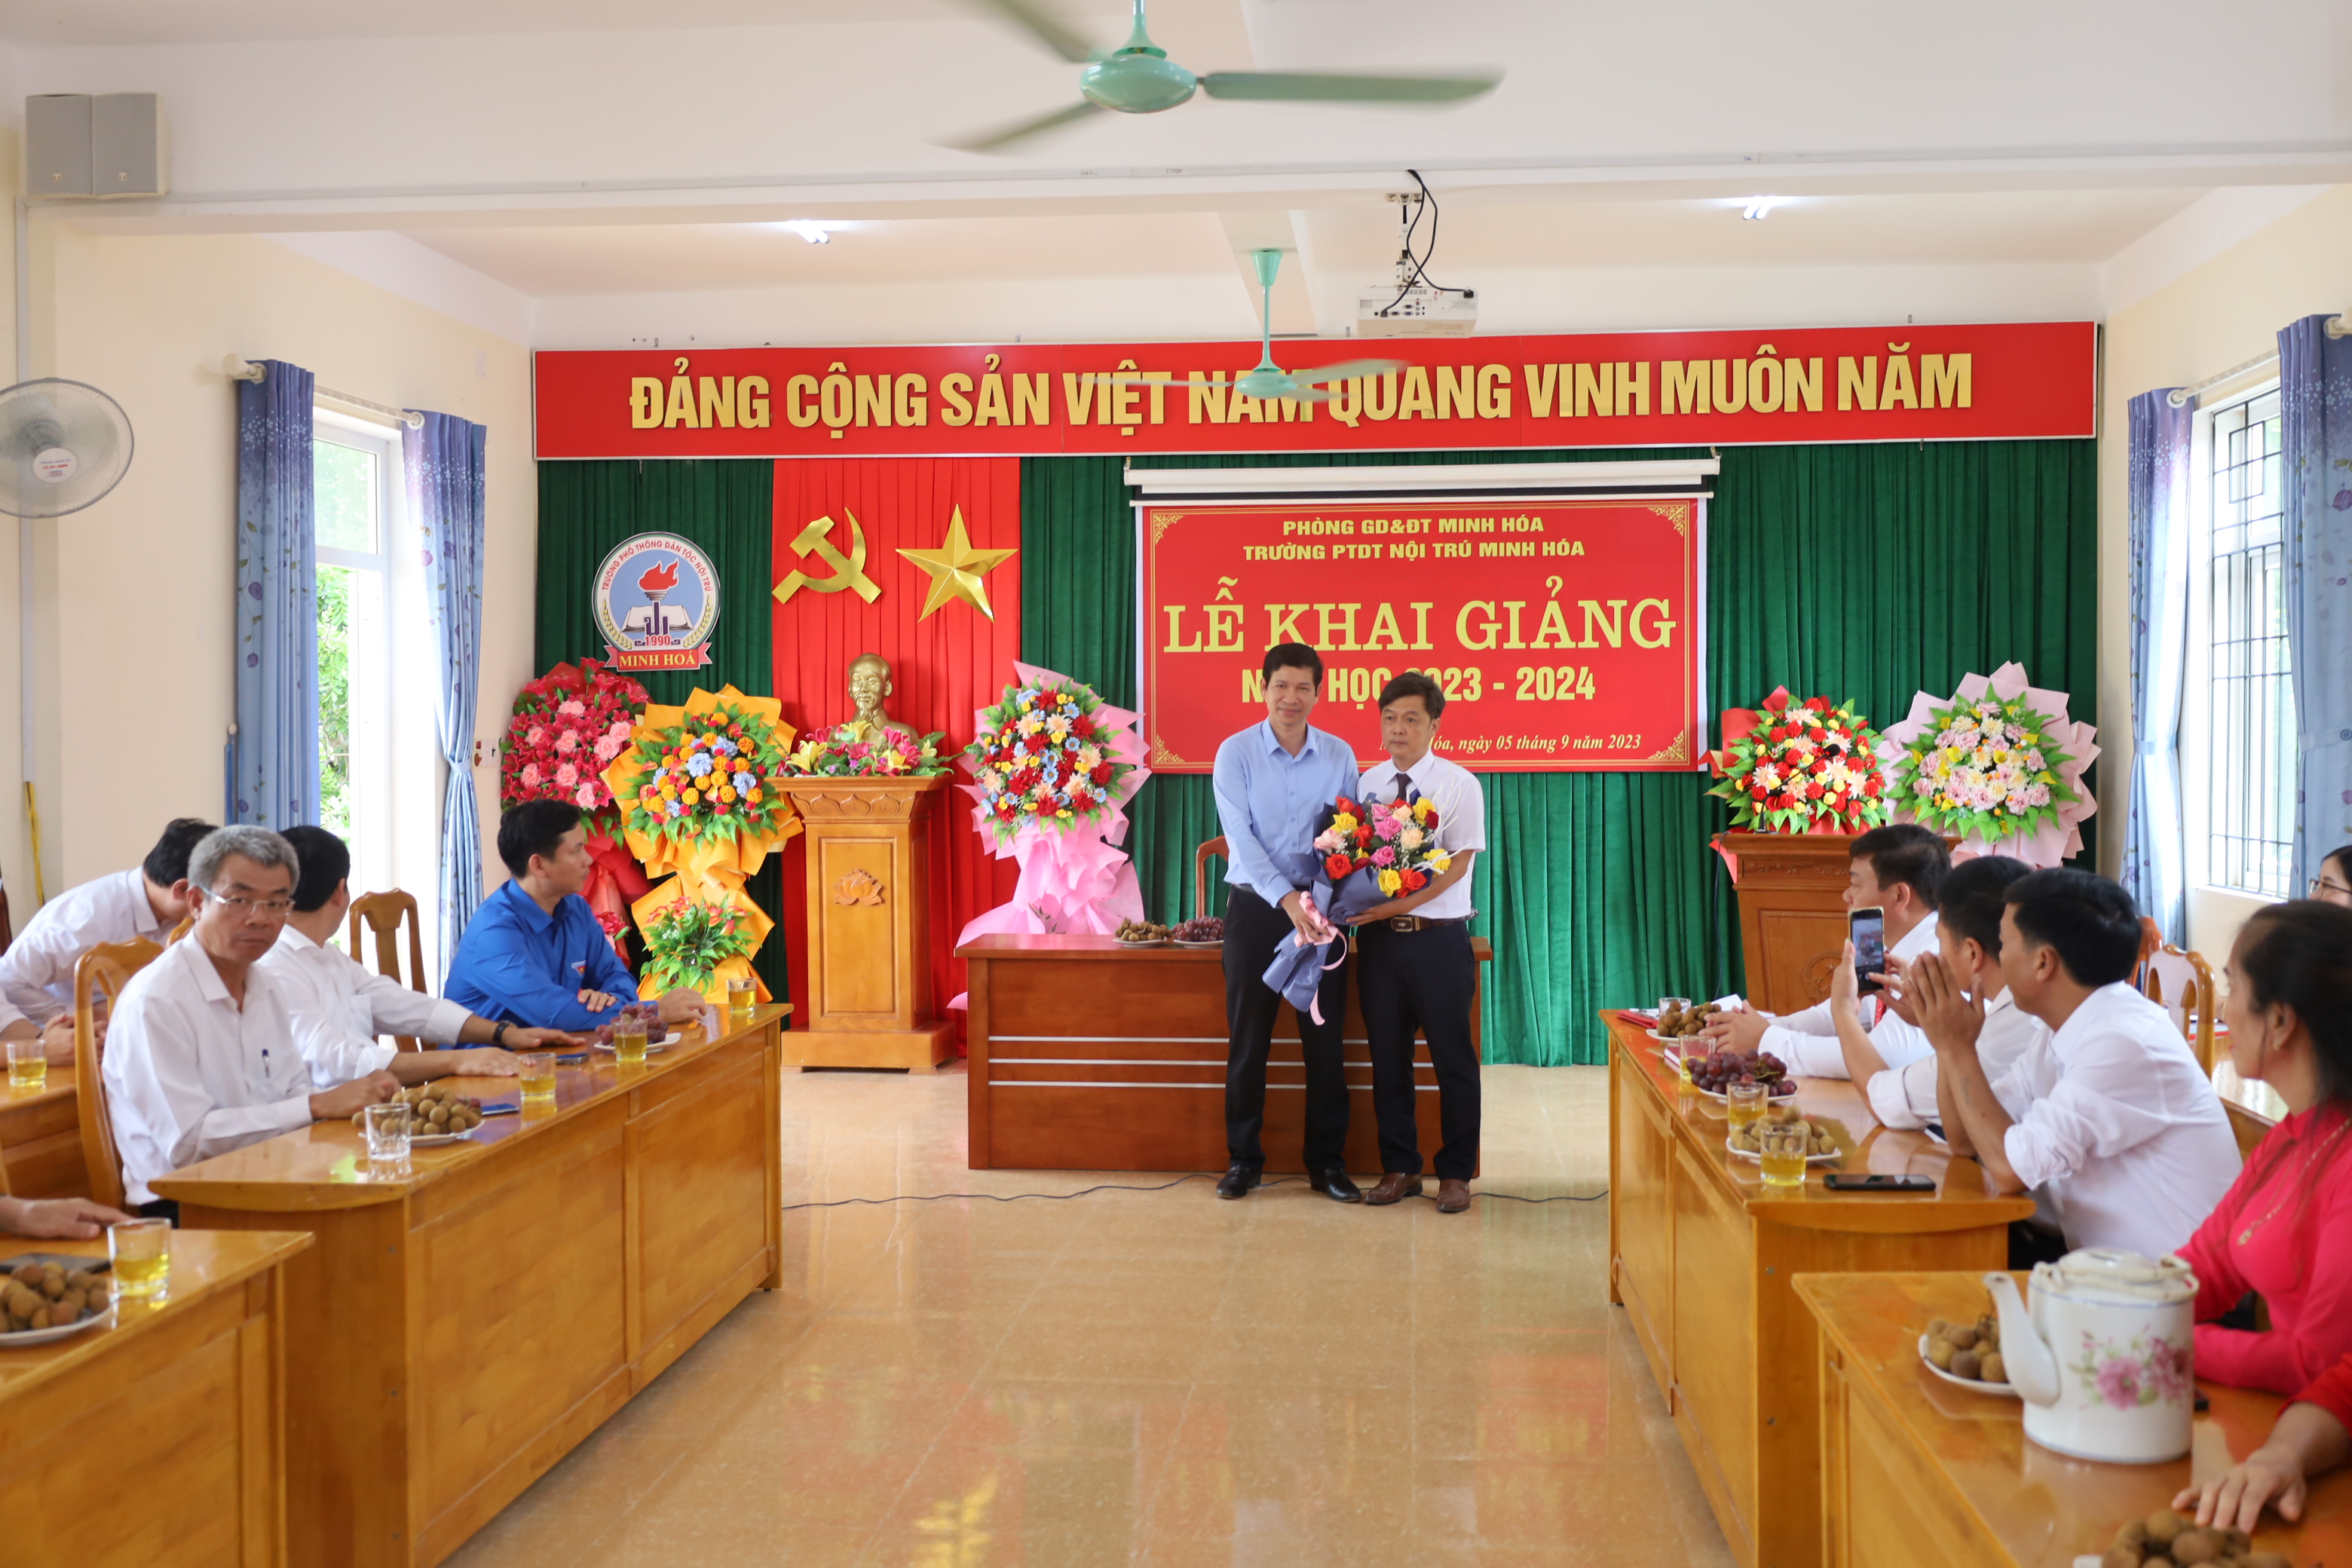 Đồng chí Hồ An Phong, Tỉnh ủy viên, Phó Chủ tịch UBND tỉnh tặng hoa chúc mừng Trường Phổ thông Dân tộc nội trú huyện Minh Hóa nhân ngày khai giảng năm học mới.